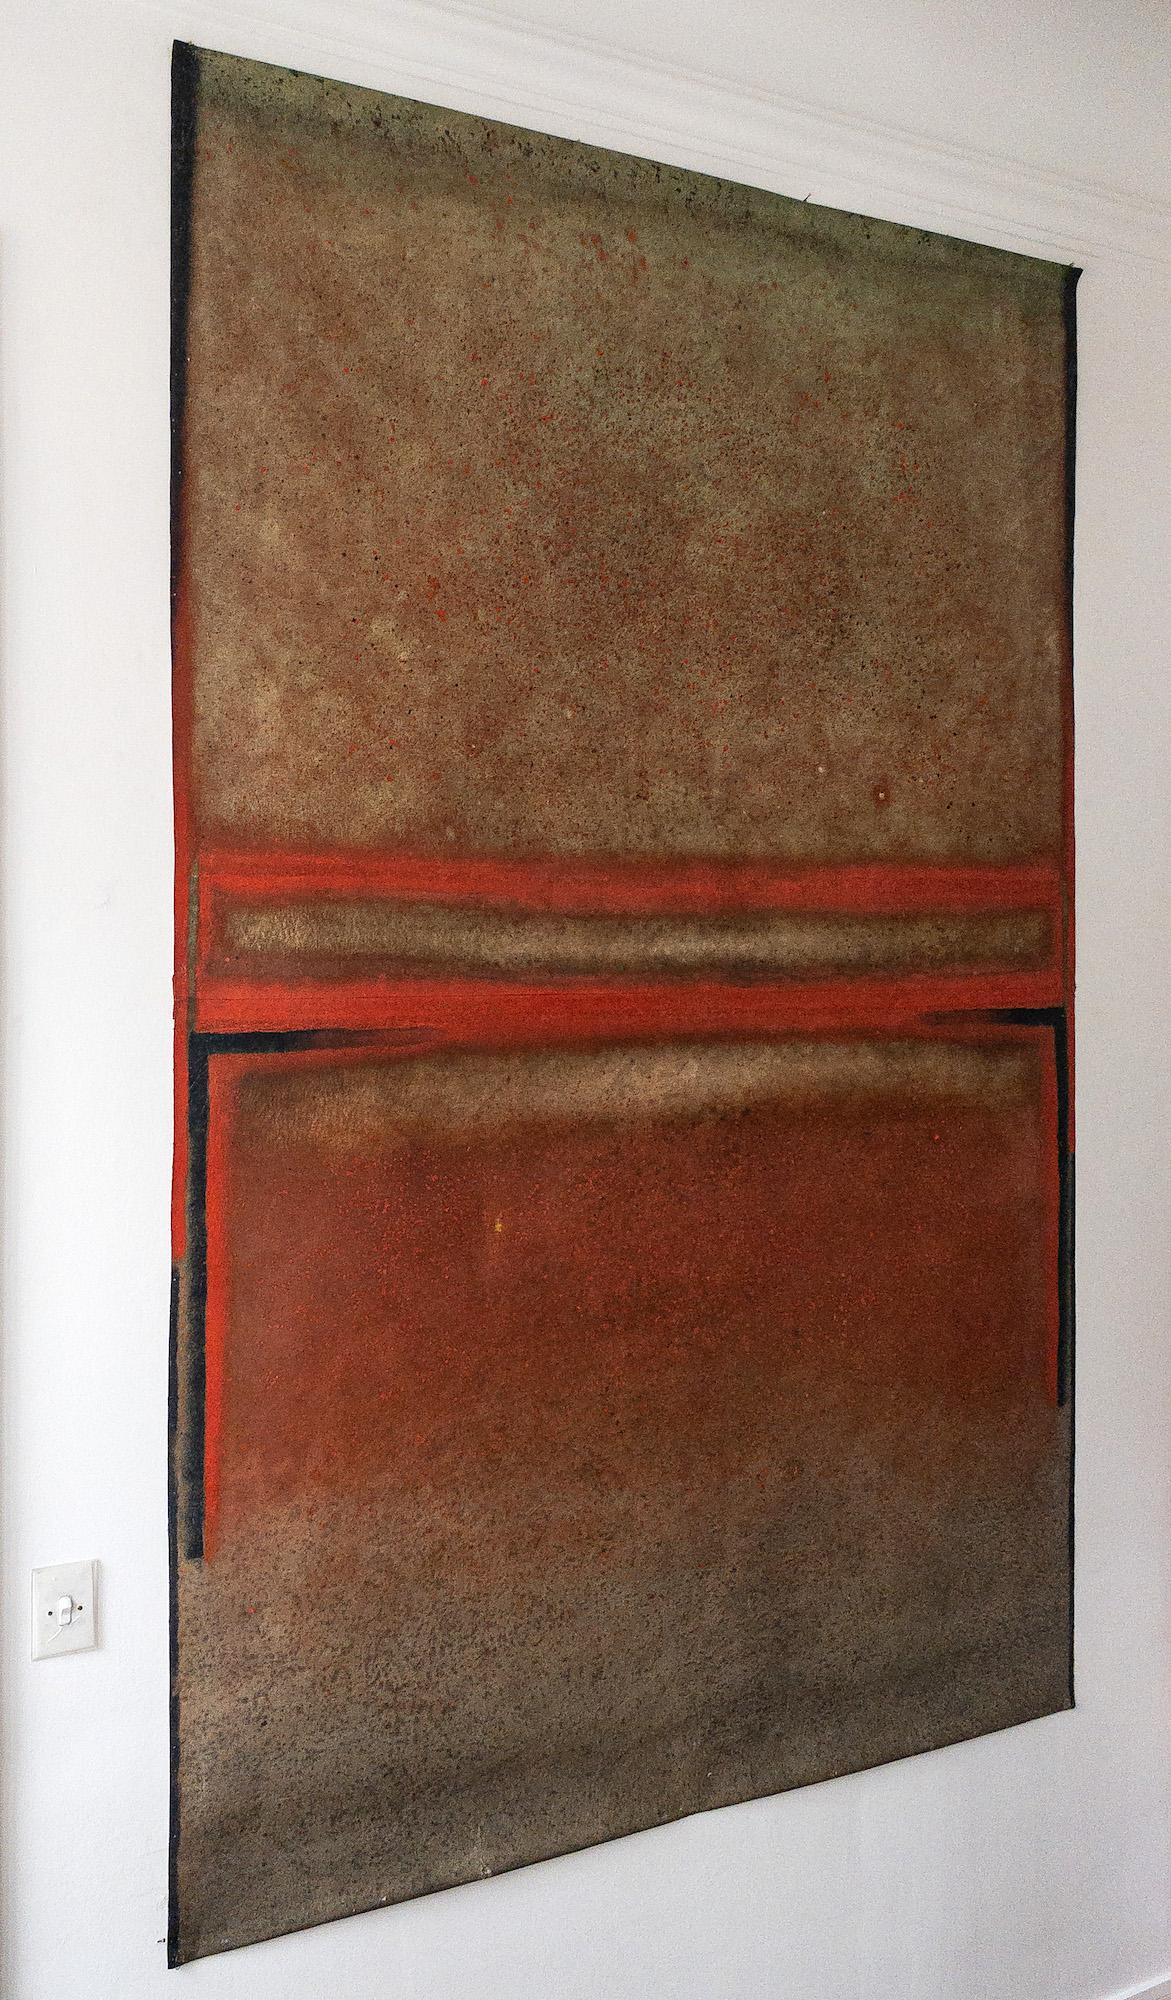 Untitled XXXI ist ein einzigartiges Gemälde des zeitgenössischen Künstlers Ferle in Öl auf freistehender Leinwand mit den Maßen 200 cm × 140 cm.
Das Kunstwerk ist signiert, wird ungerahmt verkauft und wird mit einem Echtheitszertifikat